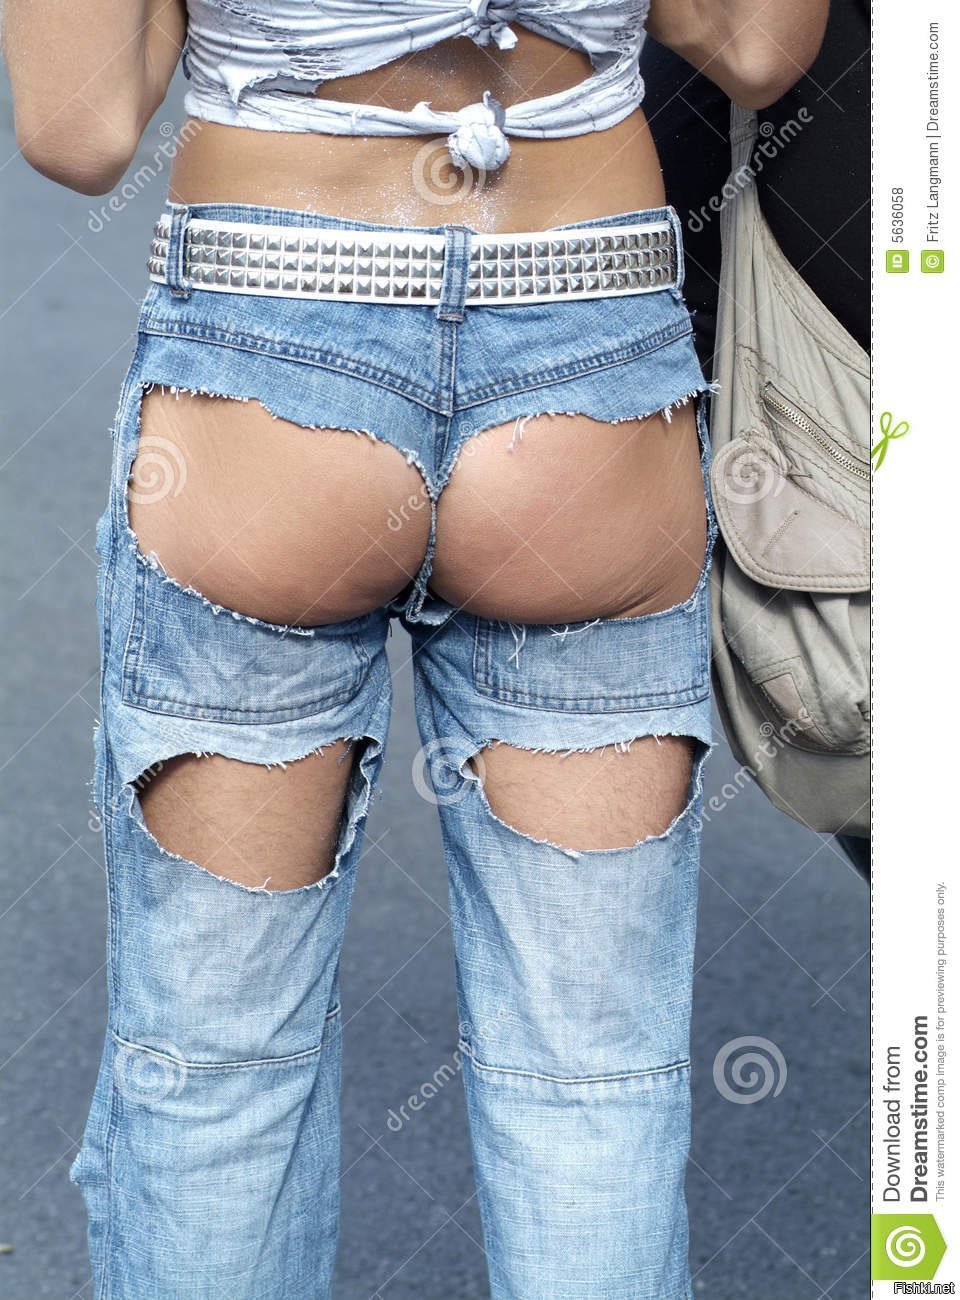 Раздетая девушка снимает джинсовые шортики